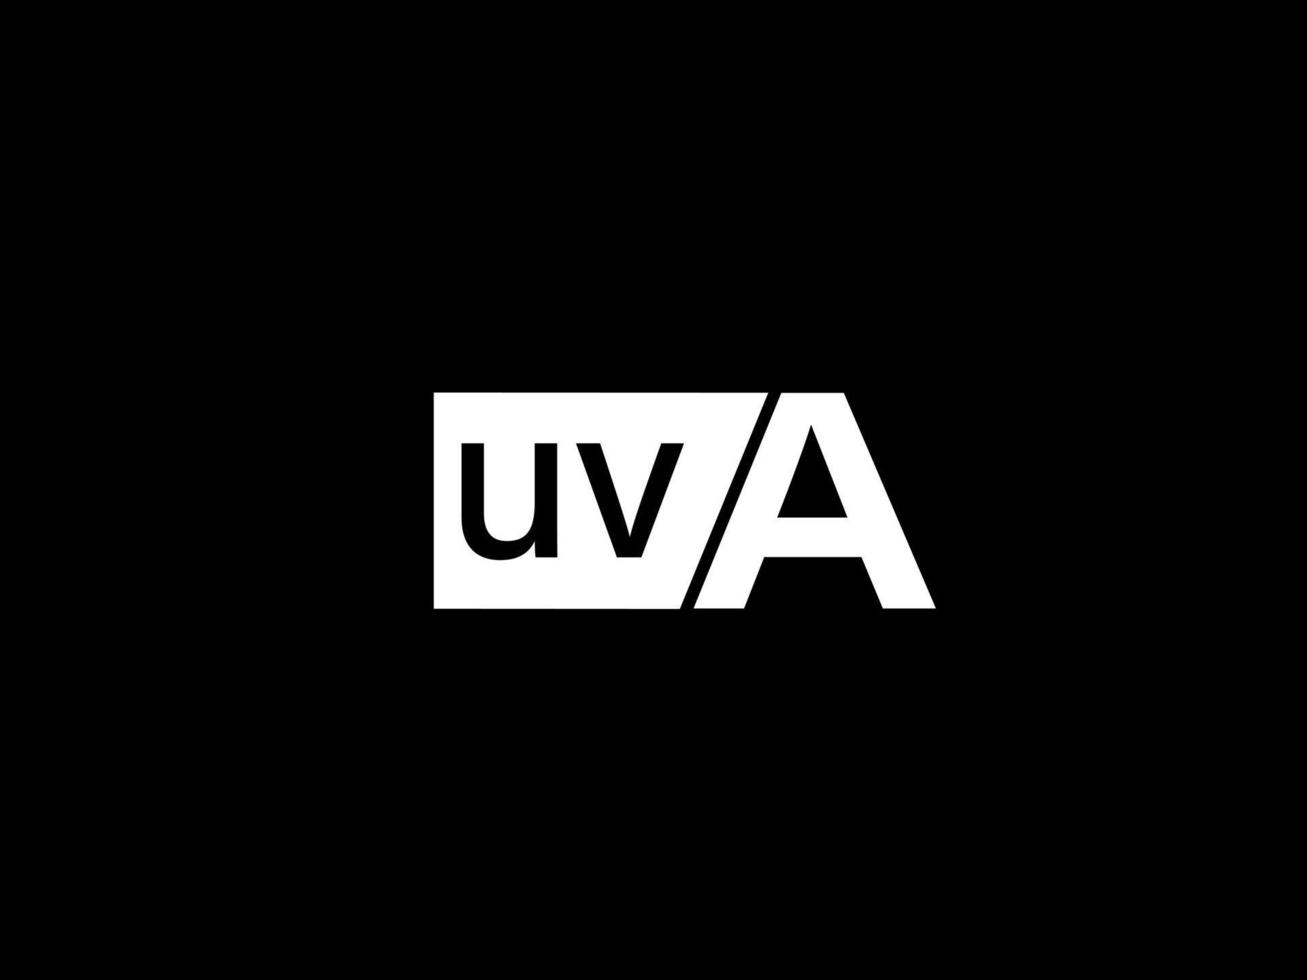 logo uva et art vectoriel de conception graphique, icônes isolées sur fond noir